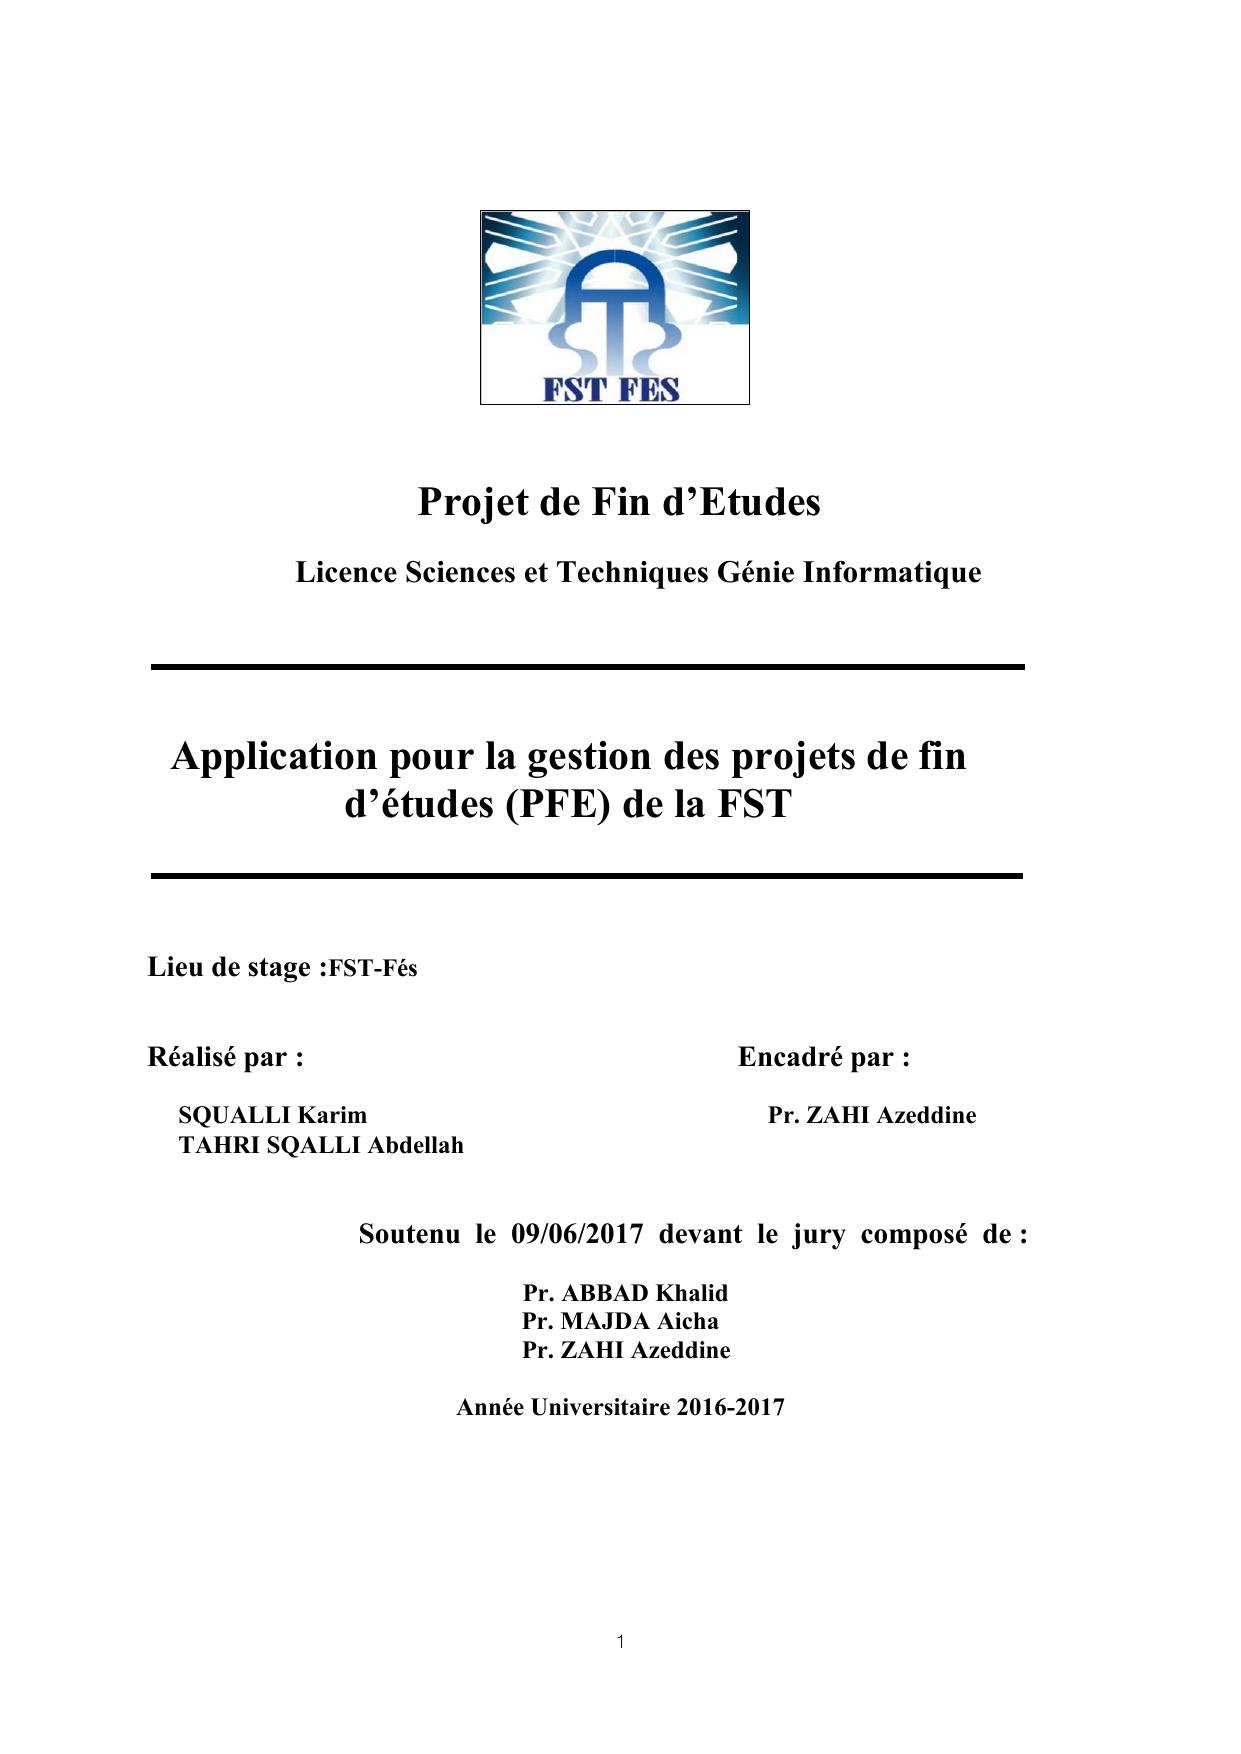 Application pour la gestion des projets de fin d’études (PFE) de la FST